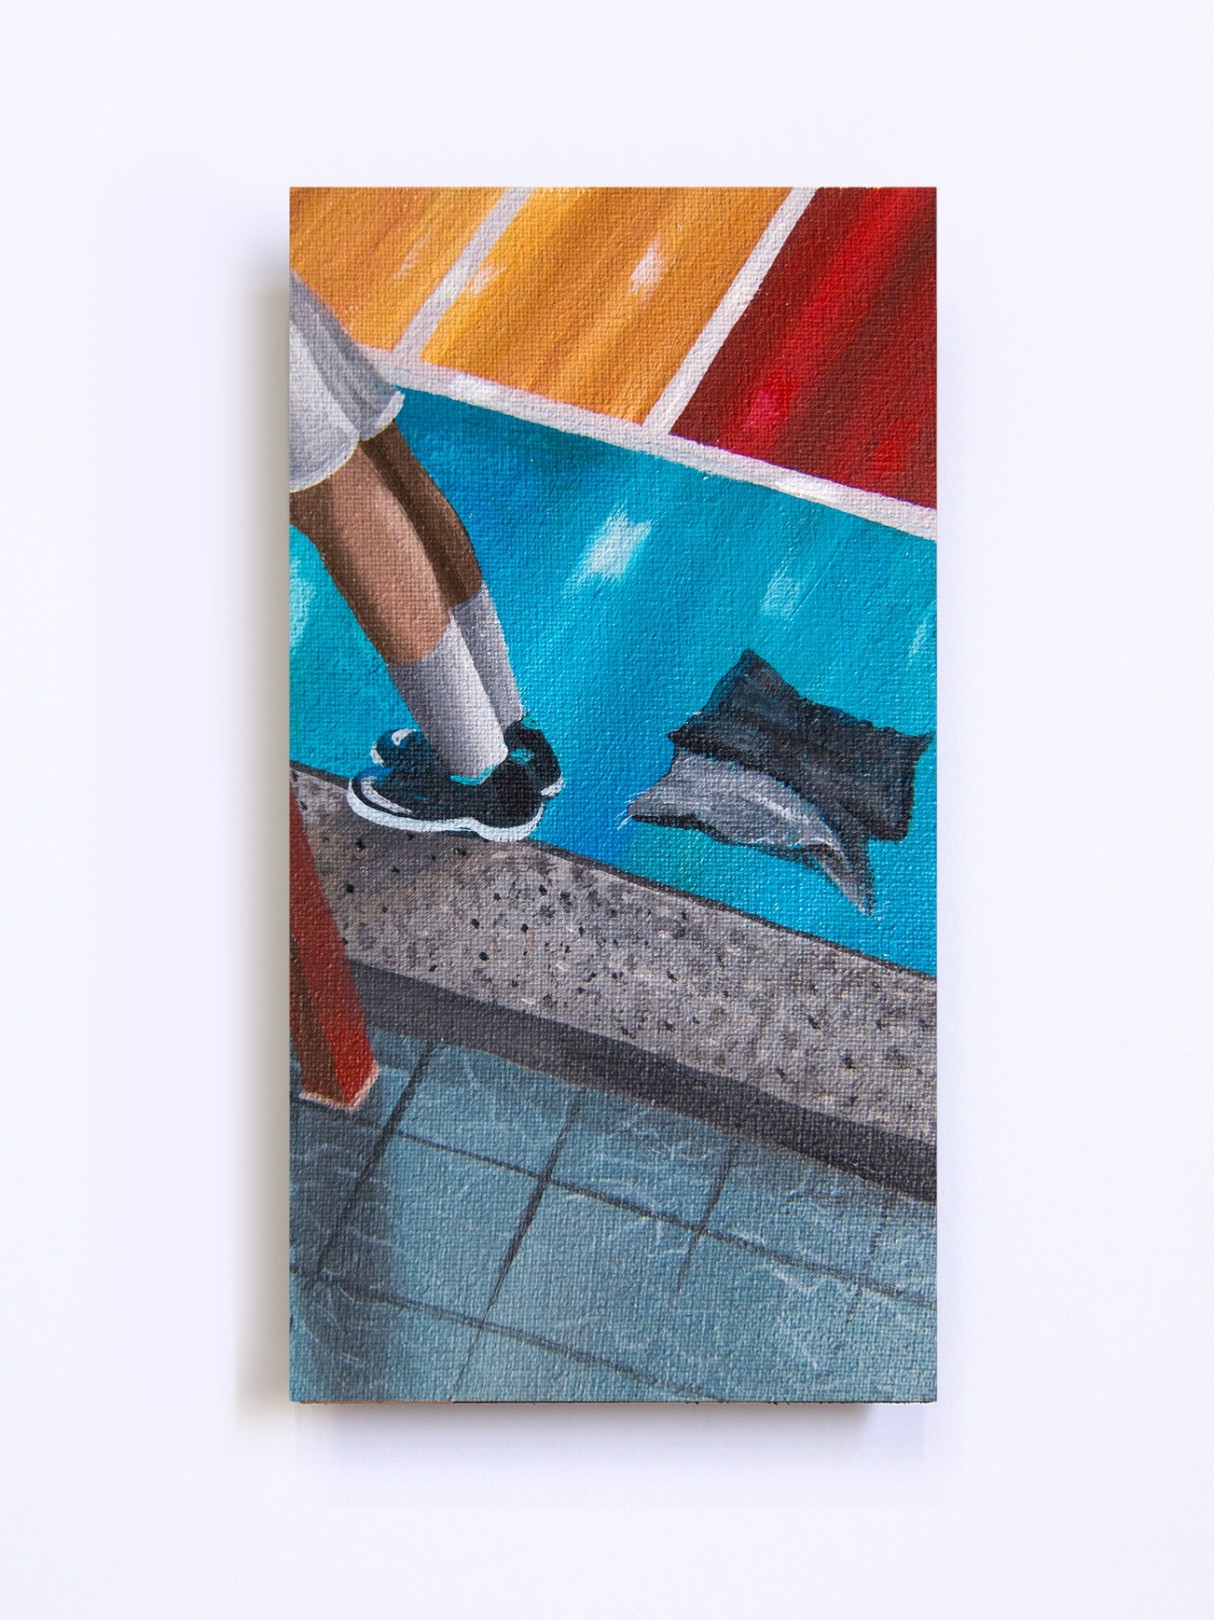 Una Trapo Sucio en la Cancha, 2020 Acrylic on canvas 15 x 8 cm. / 5.9 x 3.1 in.